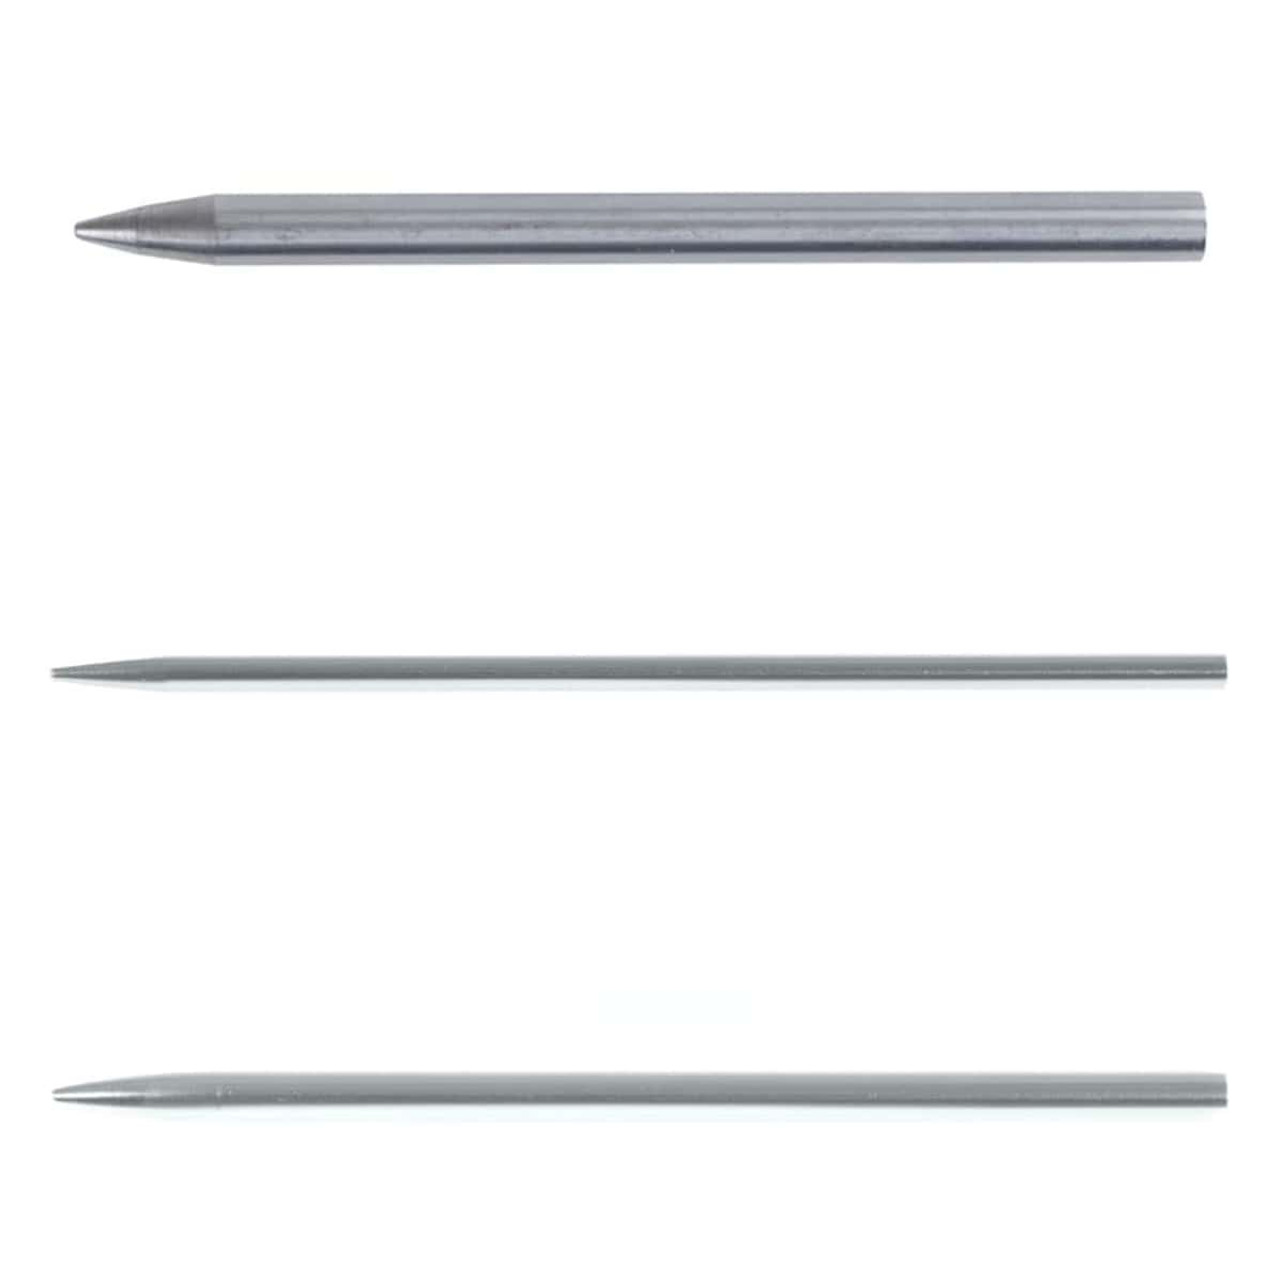 Aluminum Paracord Stitching Needle - Multiple Sizes